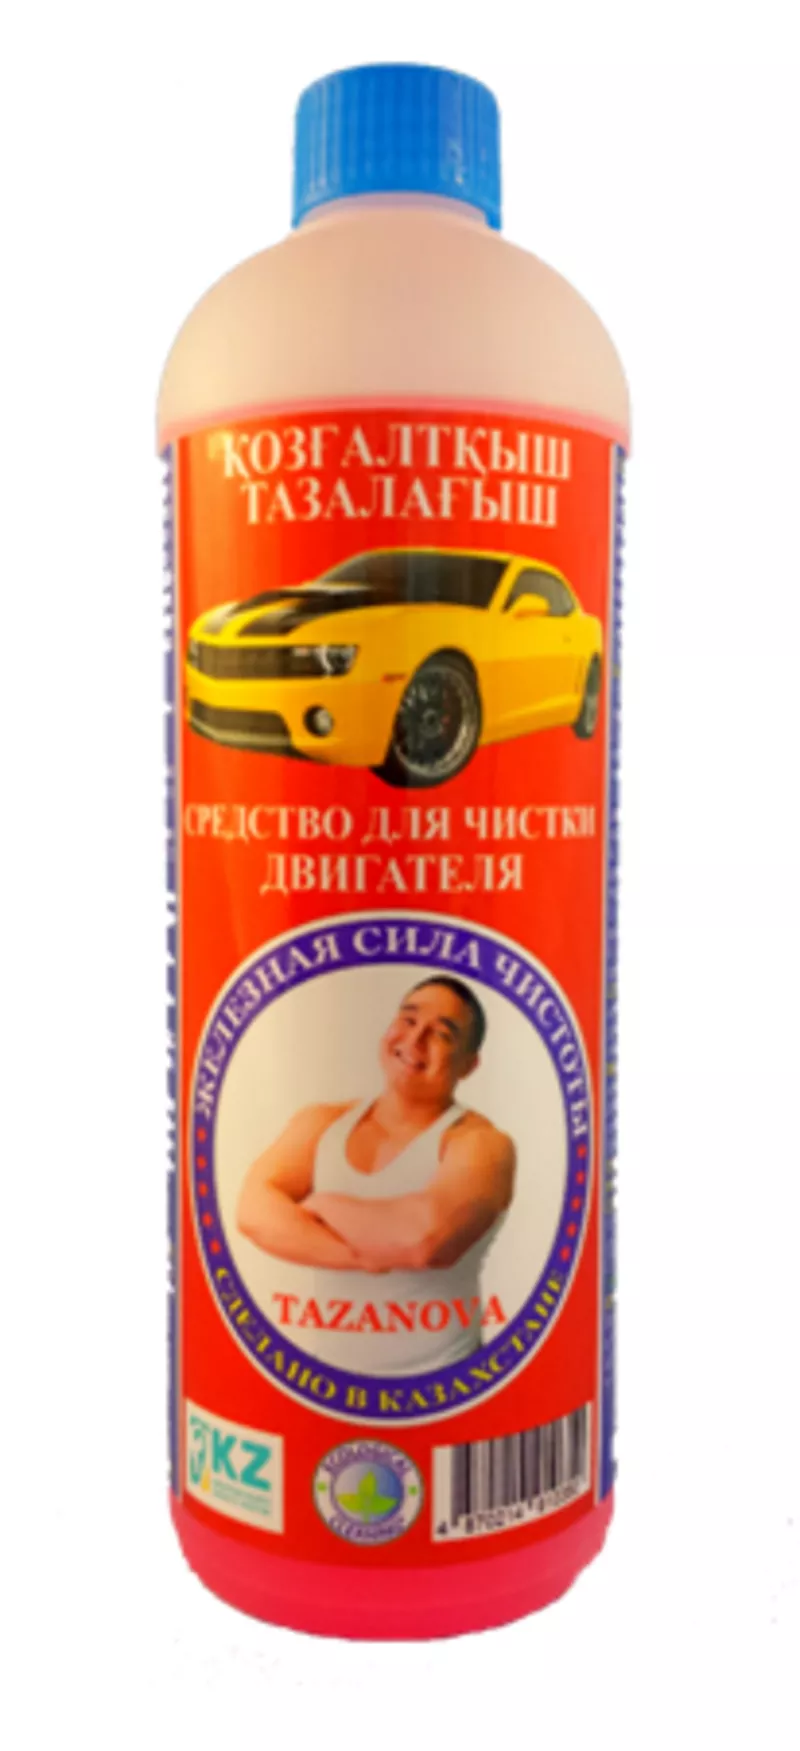 Автошампуни и автокосметика в Алматы  5